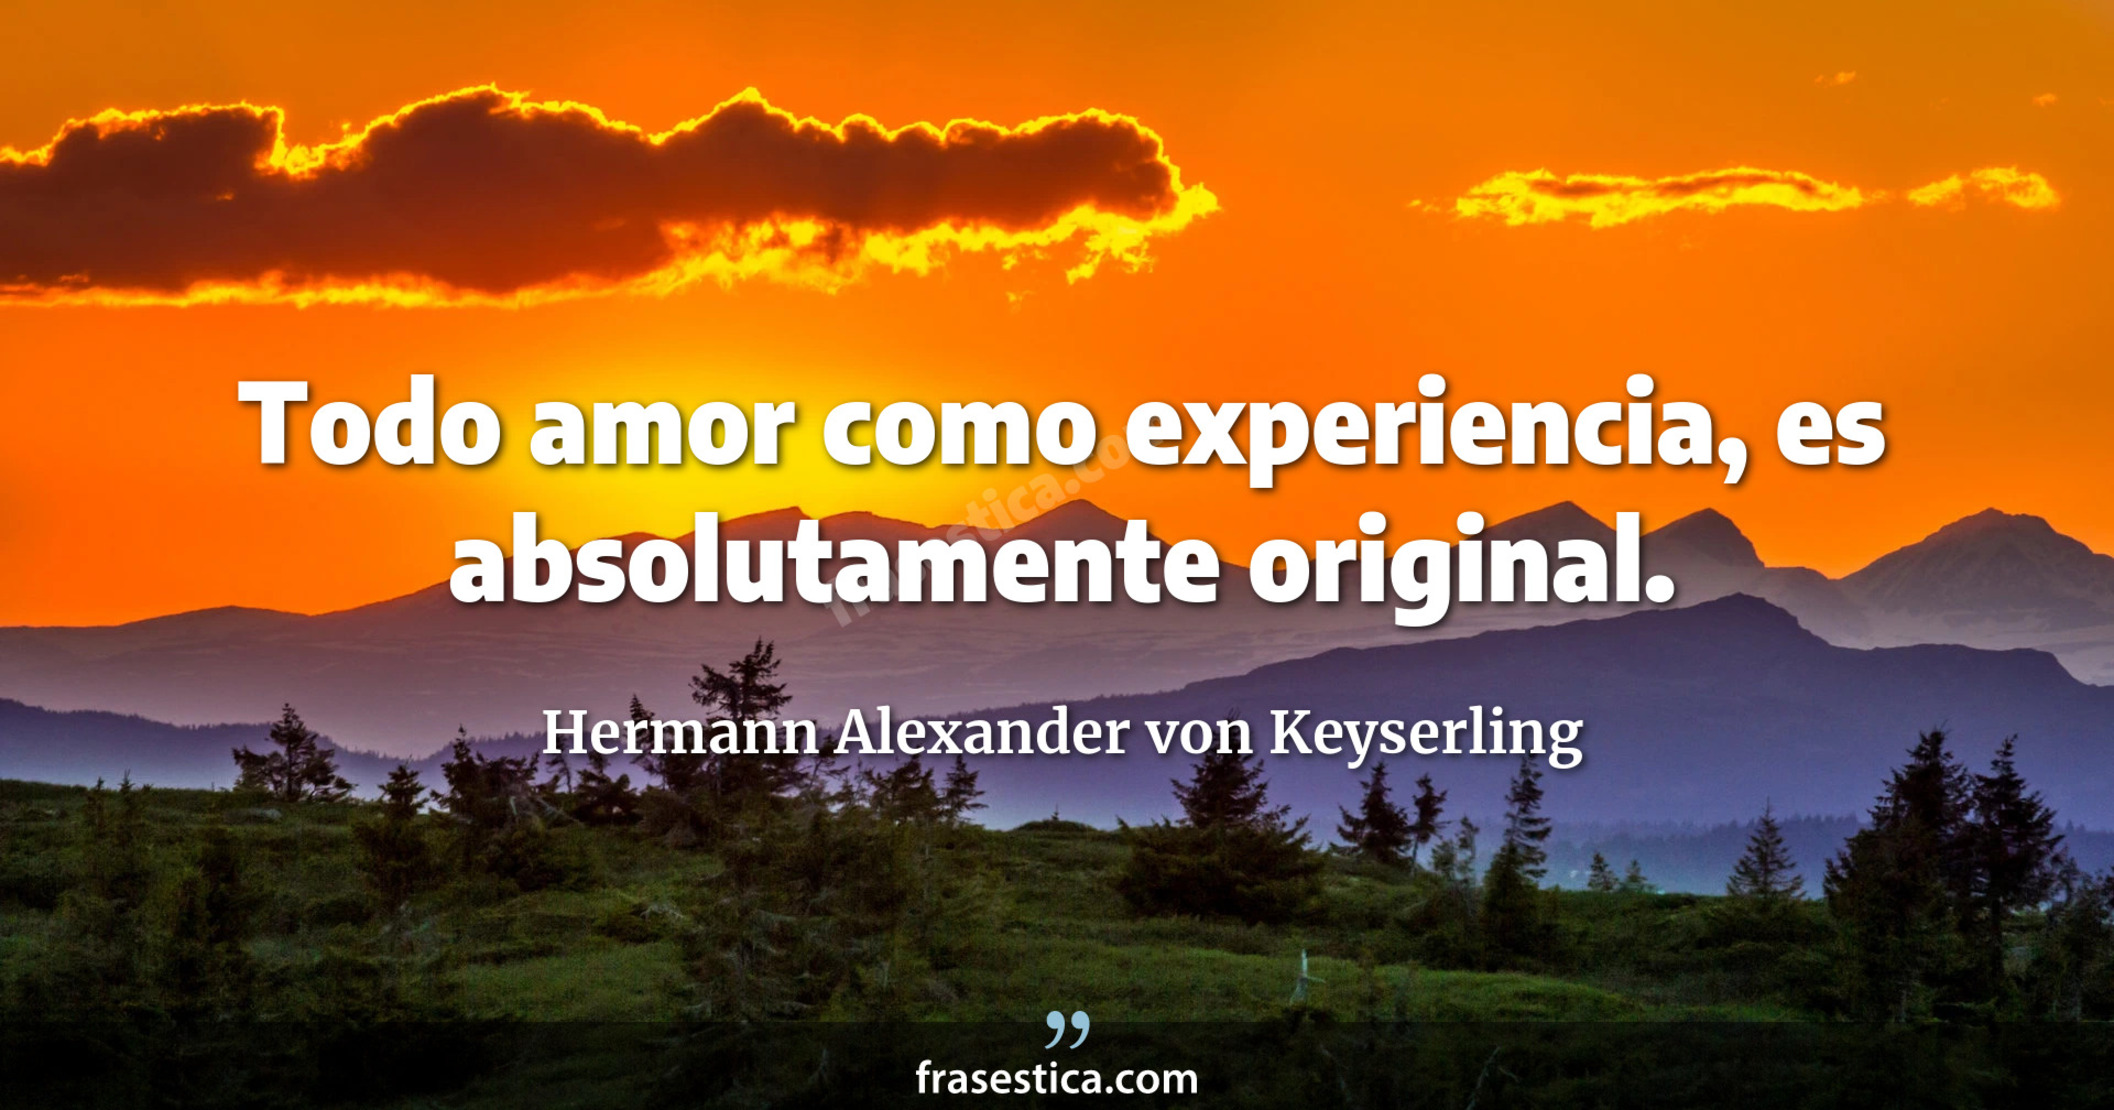 Todo amor como experiencia, es absolutamente original. - Hermann Alexander von Keyserling